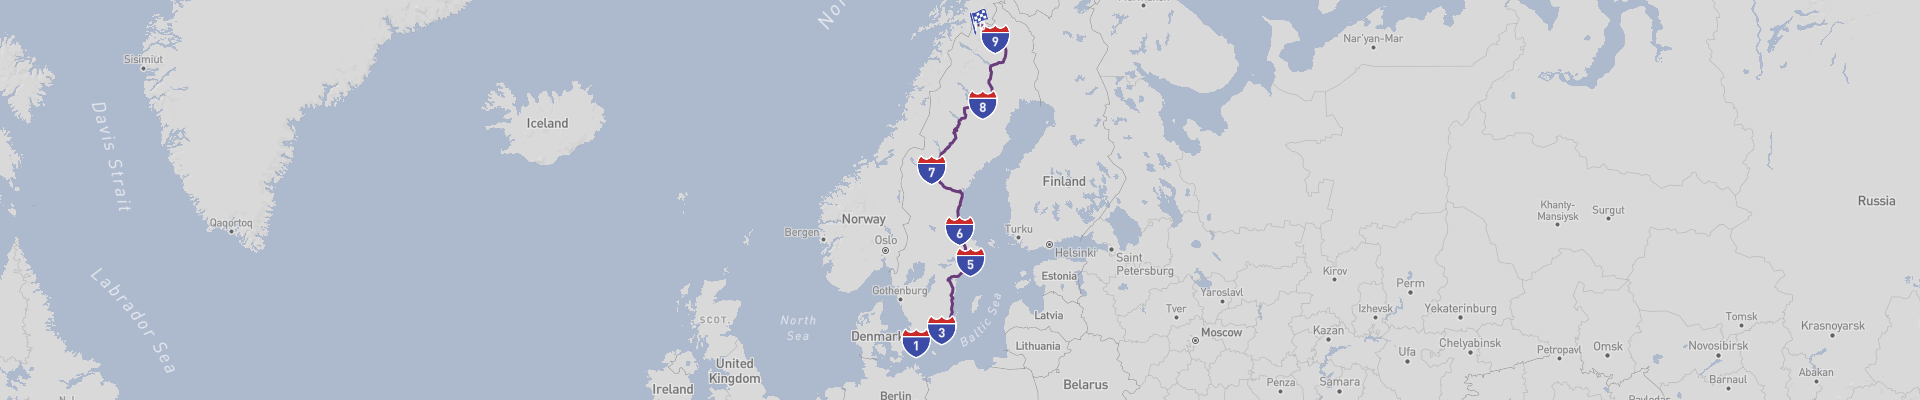 スウェーデンの北への道の旅